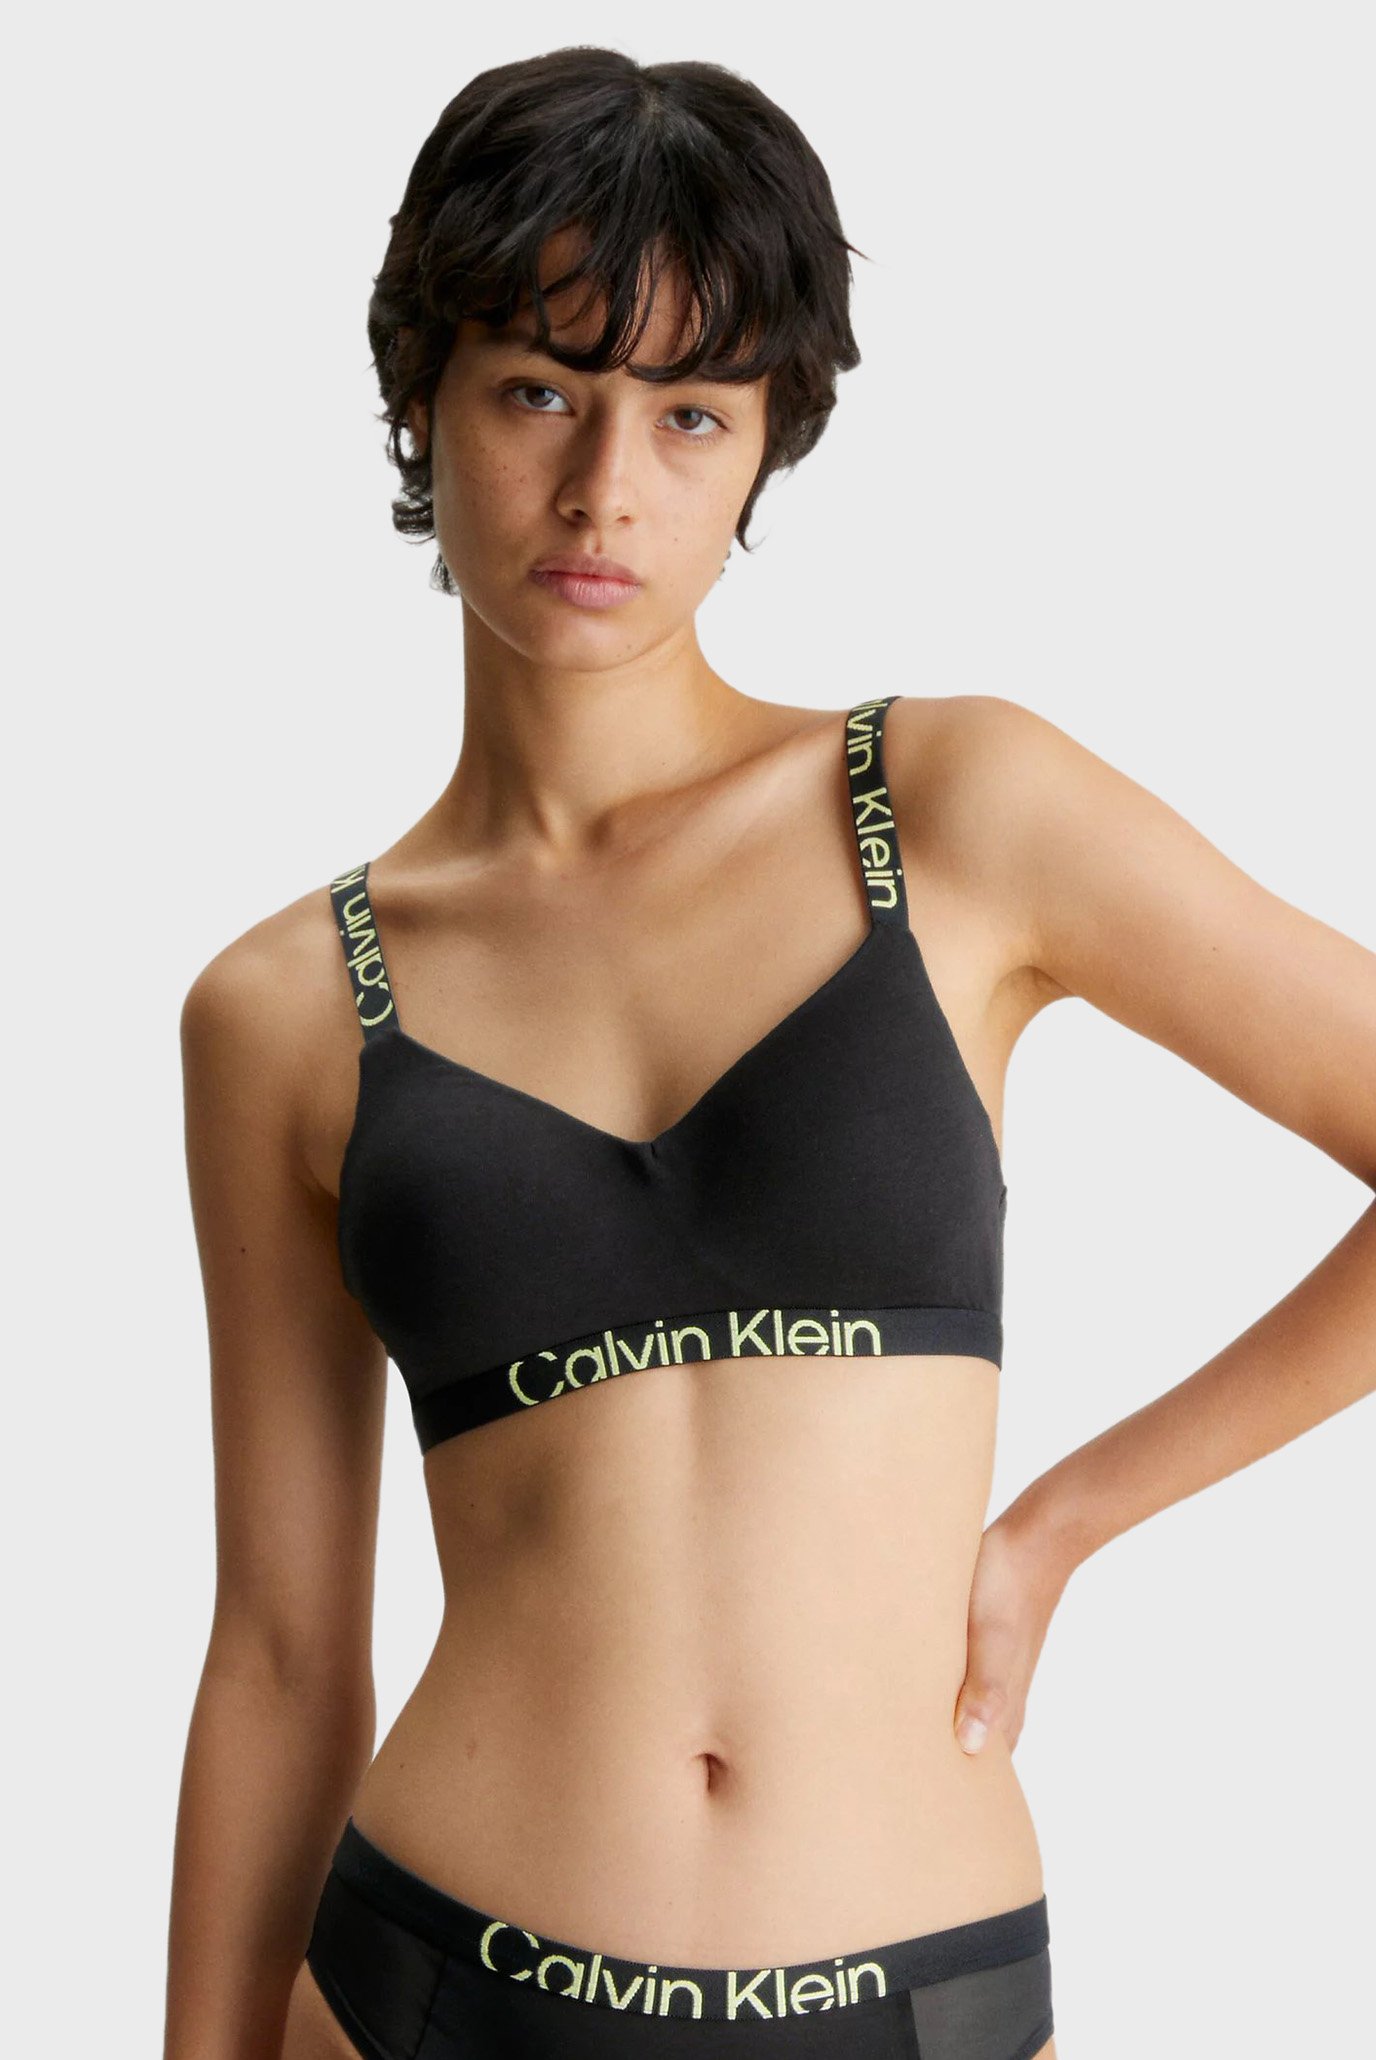 Заказать Бюстгальтеры Современный хлопок Bralette Calvin Klein, цвет -  черный, по цене 3 960 рублей на маркетплейсе